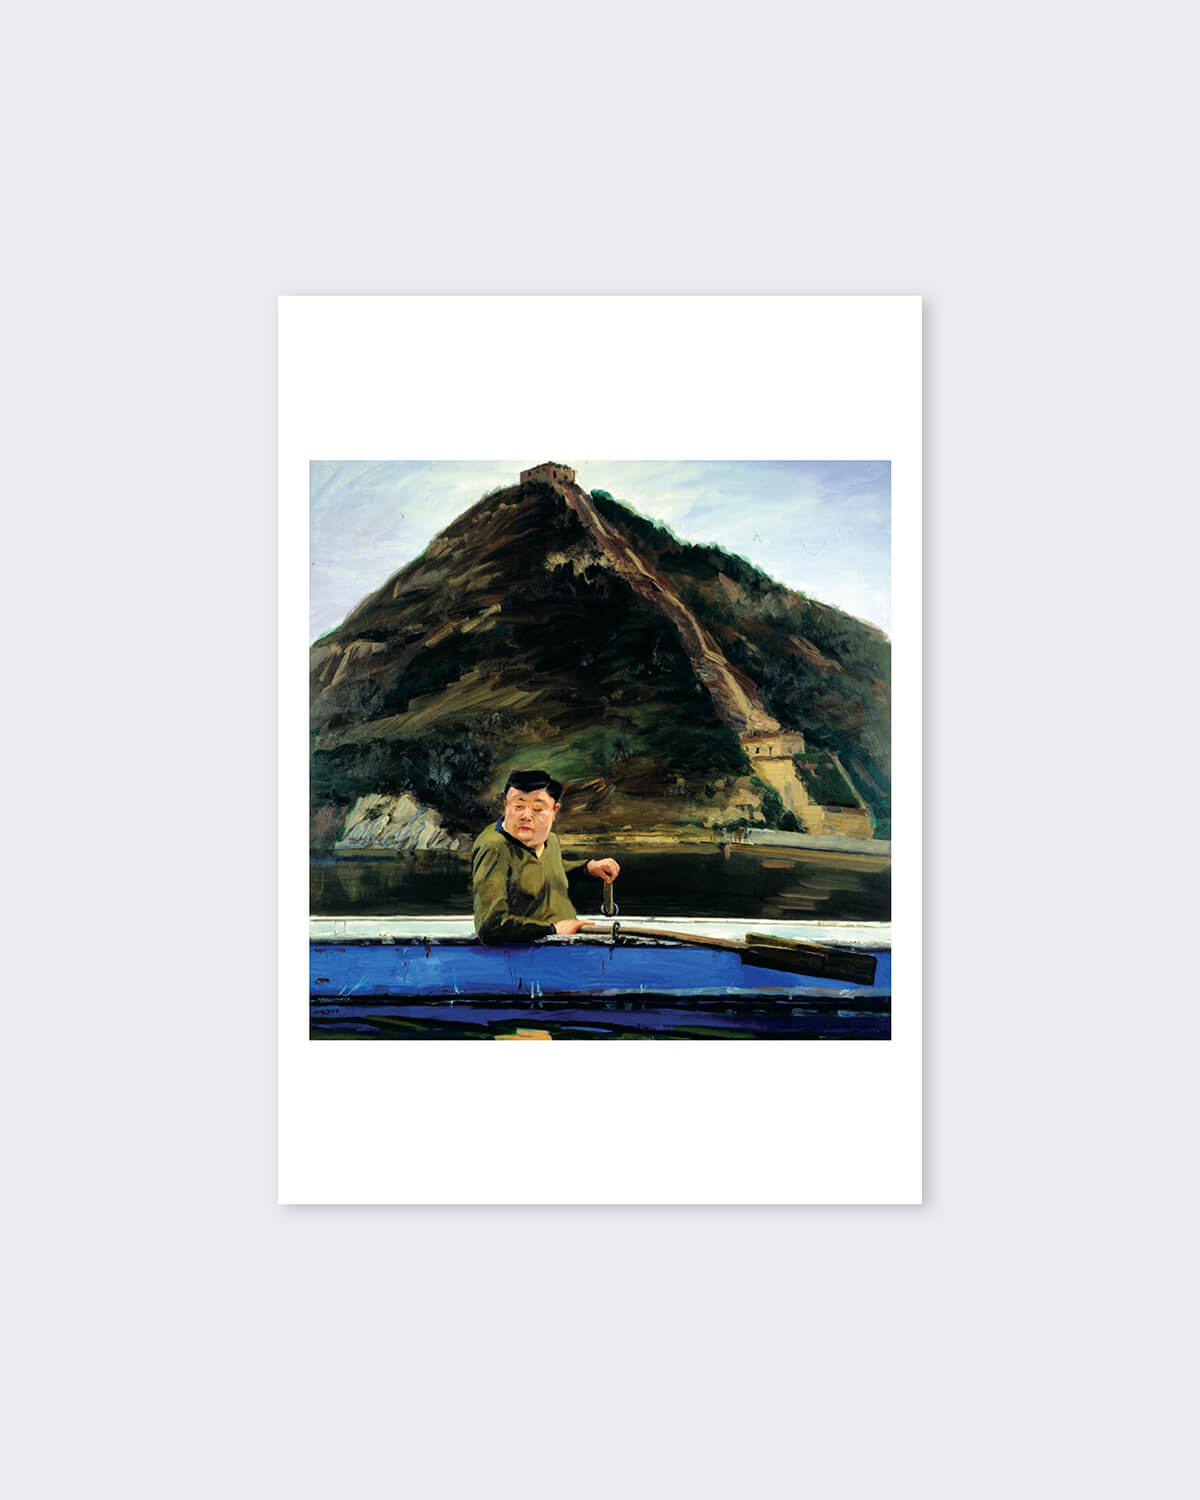 Liu Xiaodong 'A Mountain' Postcard